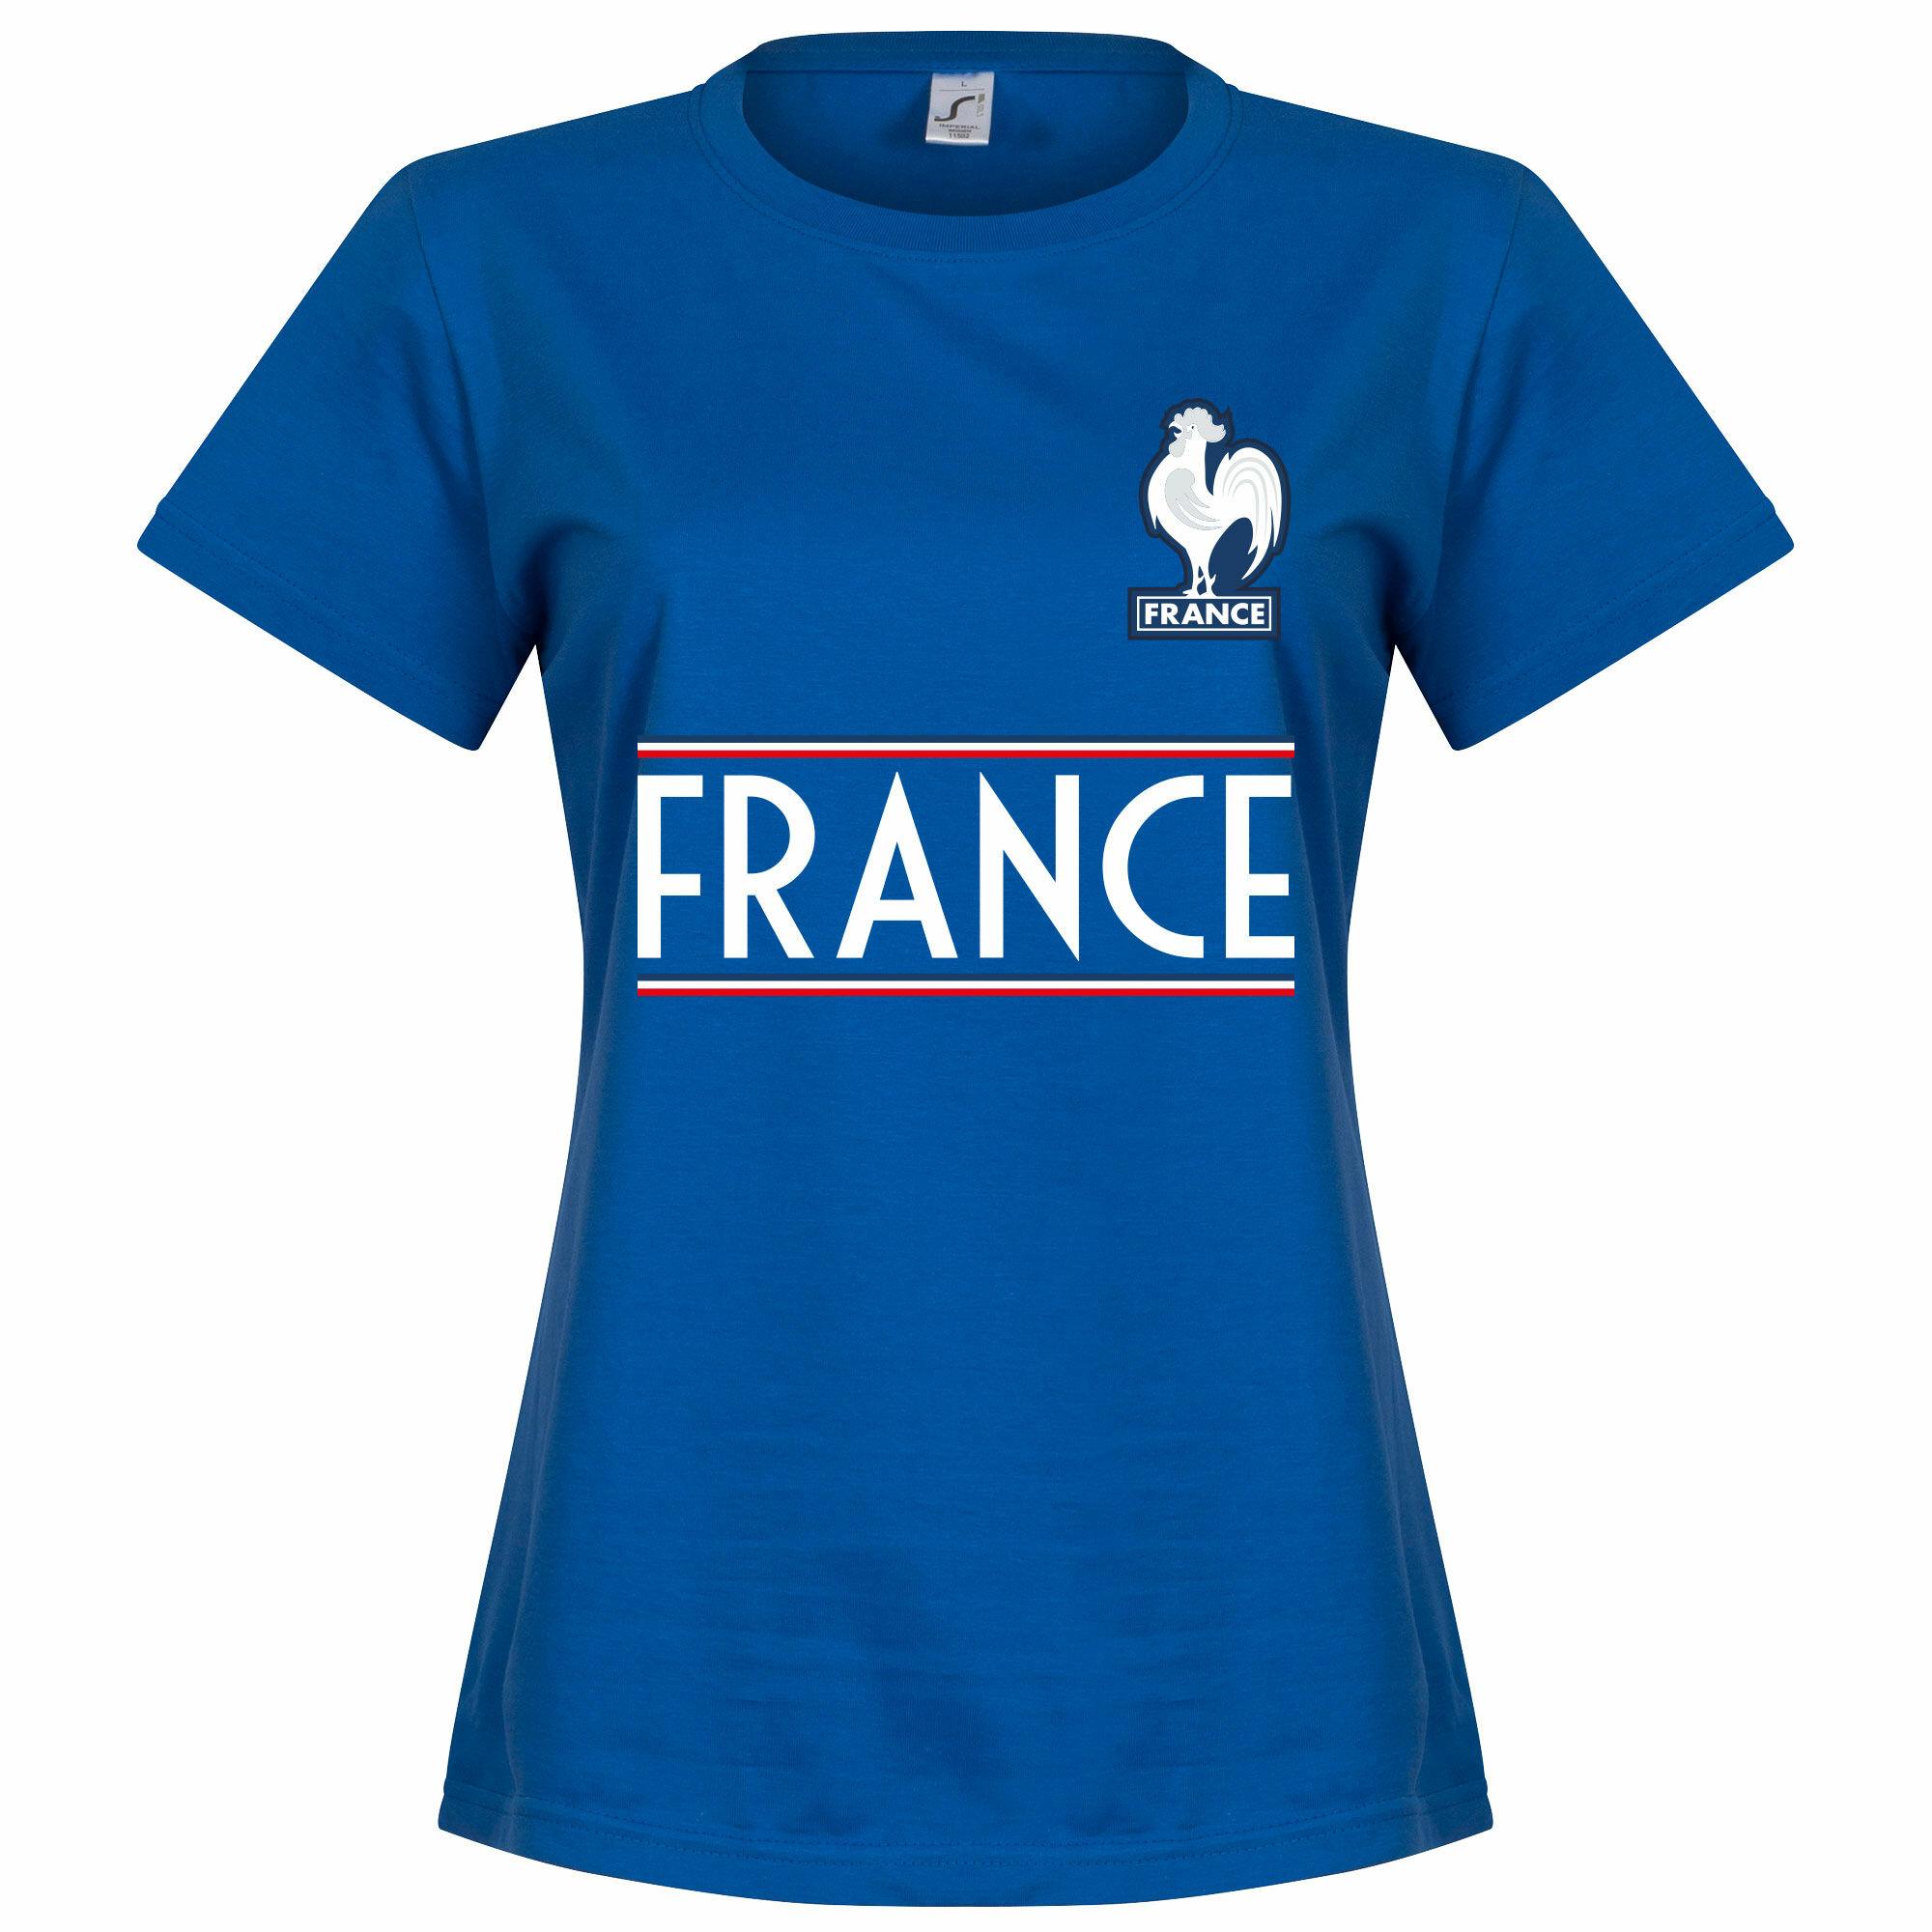 Francie - Tričko dámské - modré